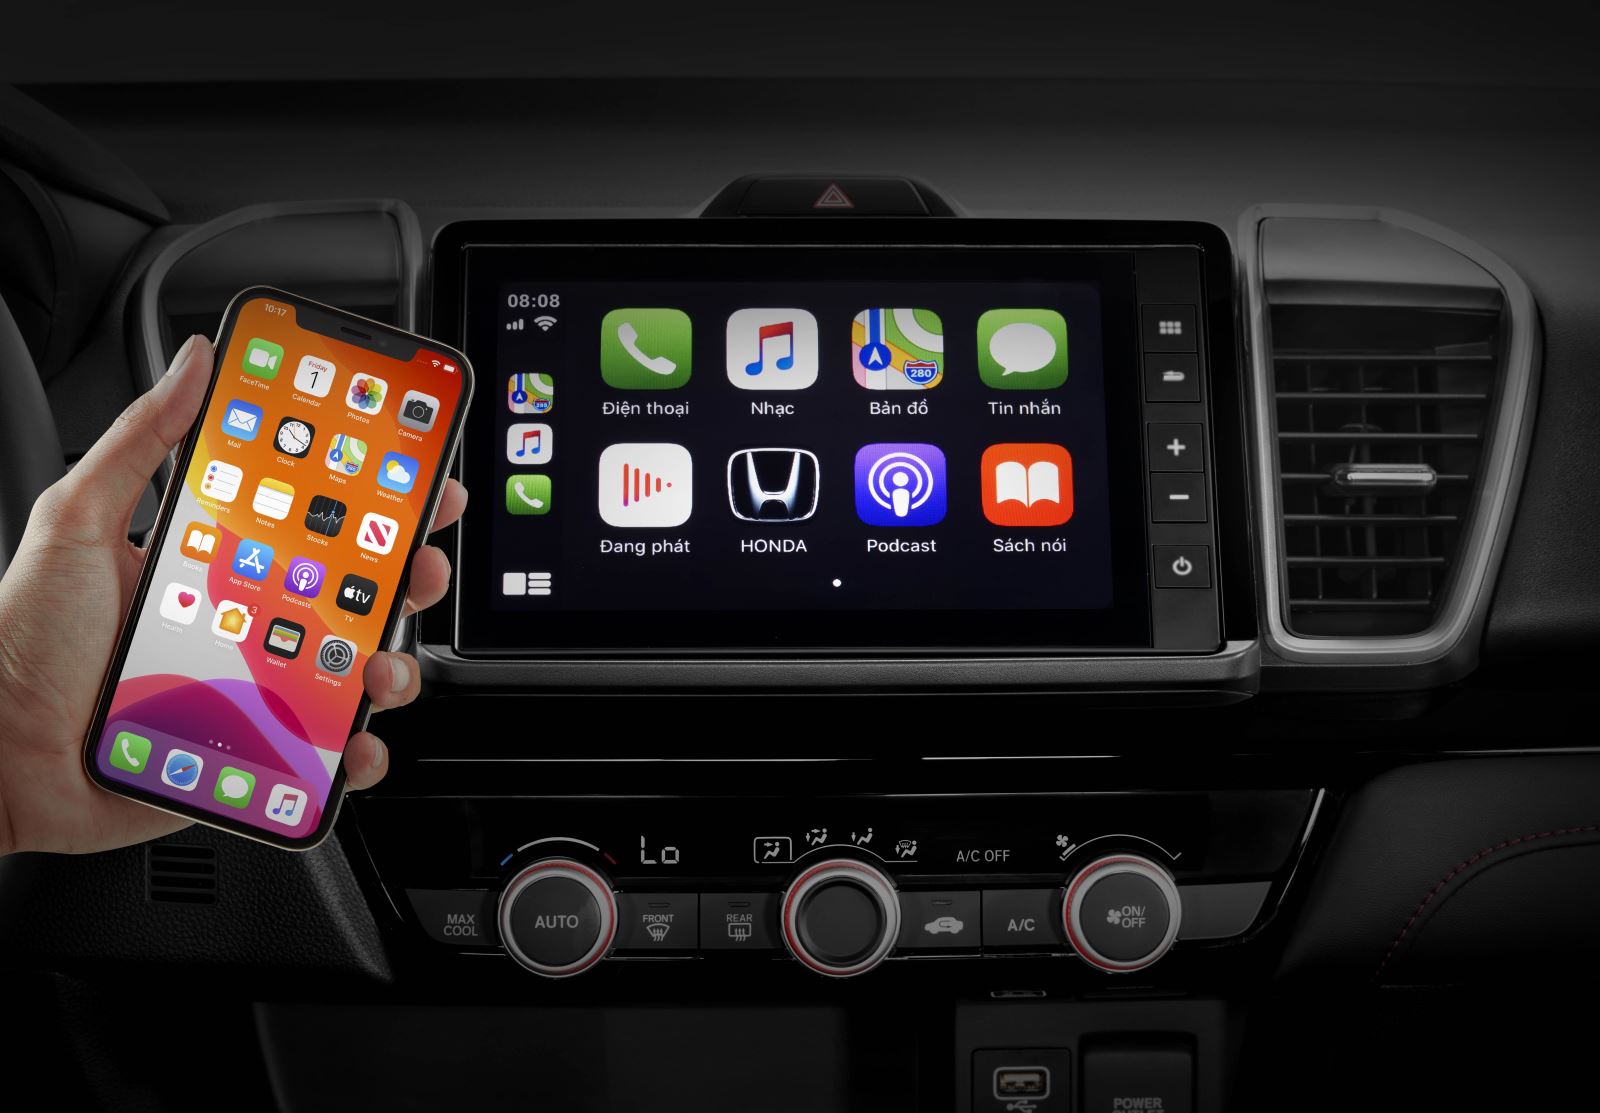 Tính năng hiện đại với màn hình cảm ứng 8inch và kết nối Apple Carplay, Androi Auto